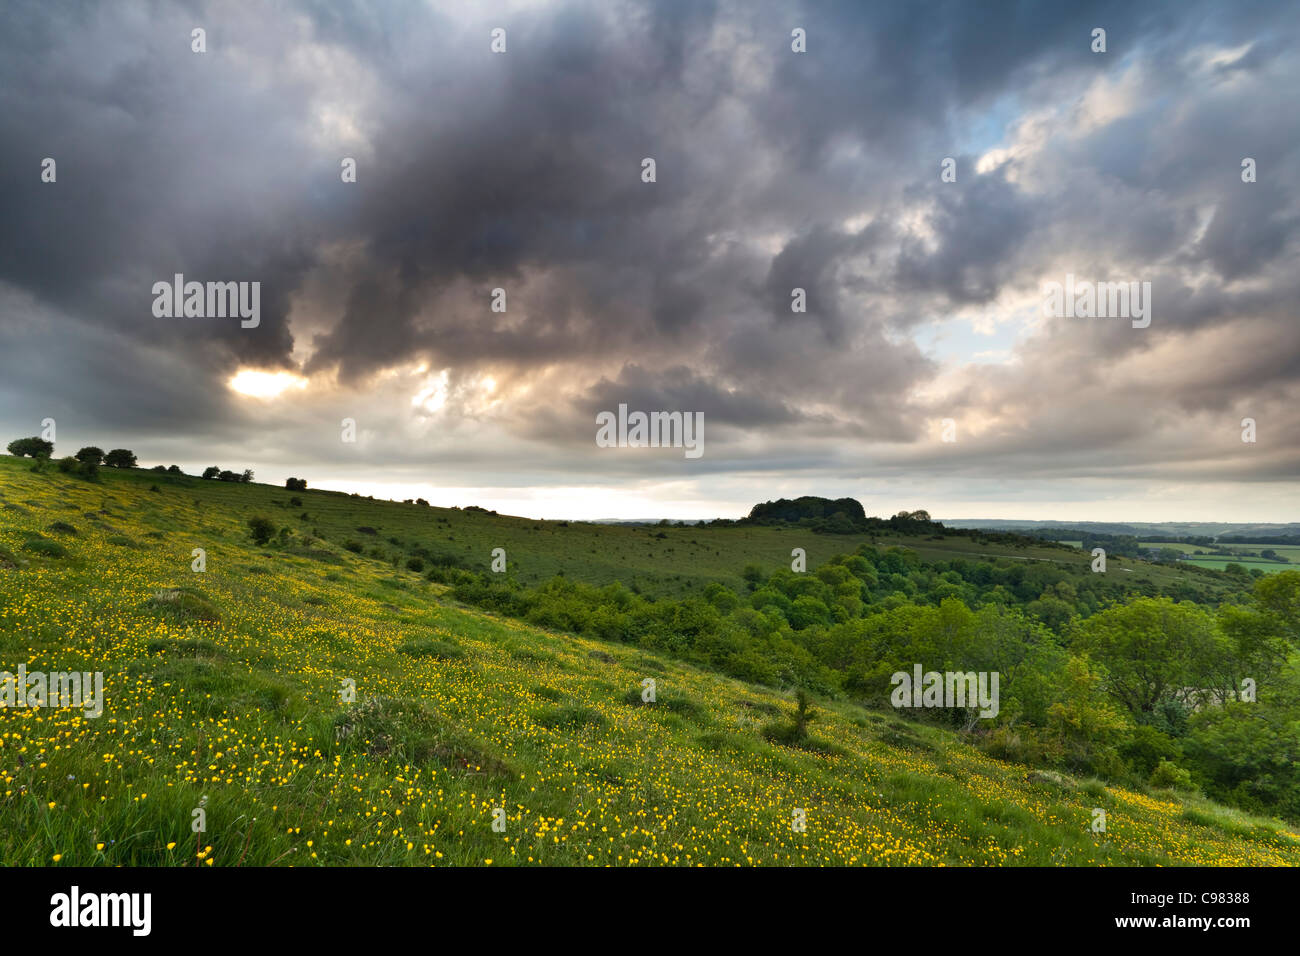 Approche de l'orage nuages sur un paysage rural Wiltshire au printemps Banque D'Images